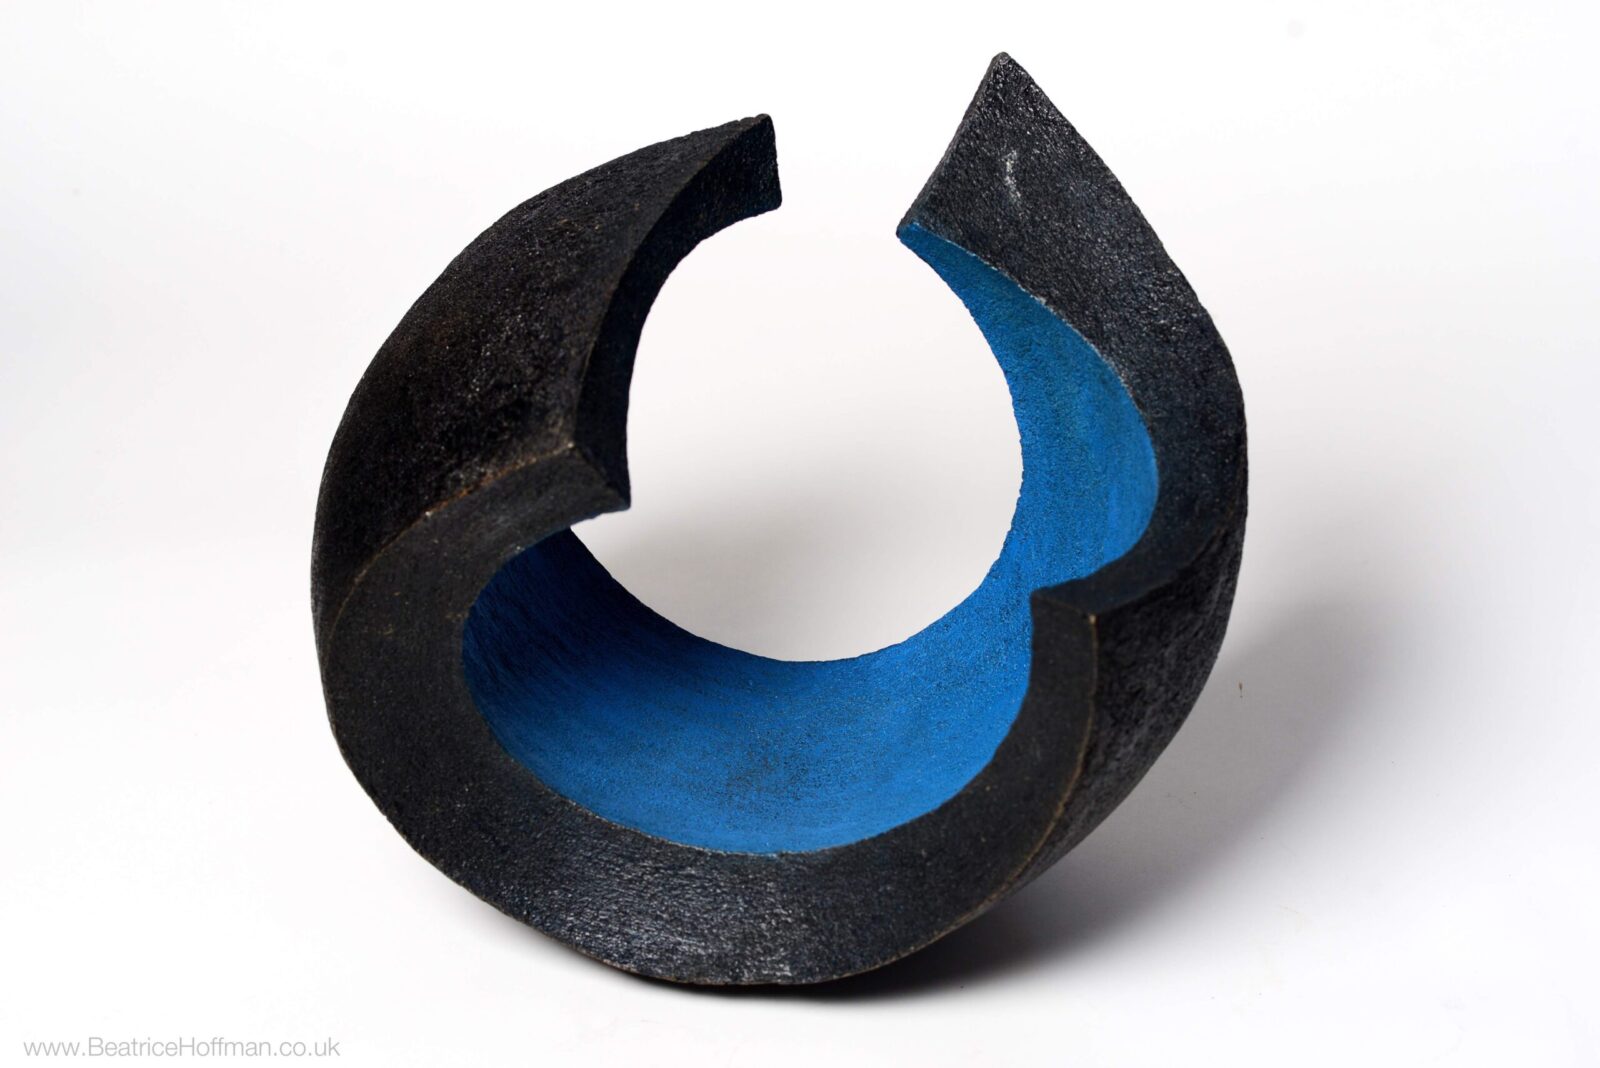 Abstract circular garden bronze sculpture coloured blue and black